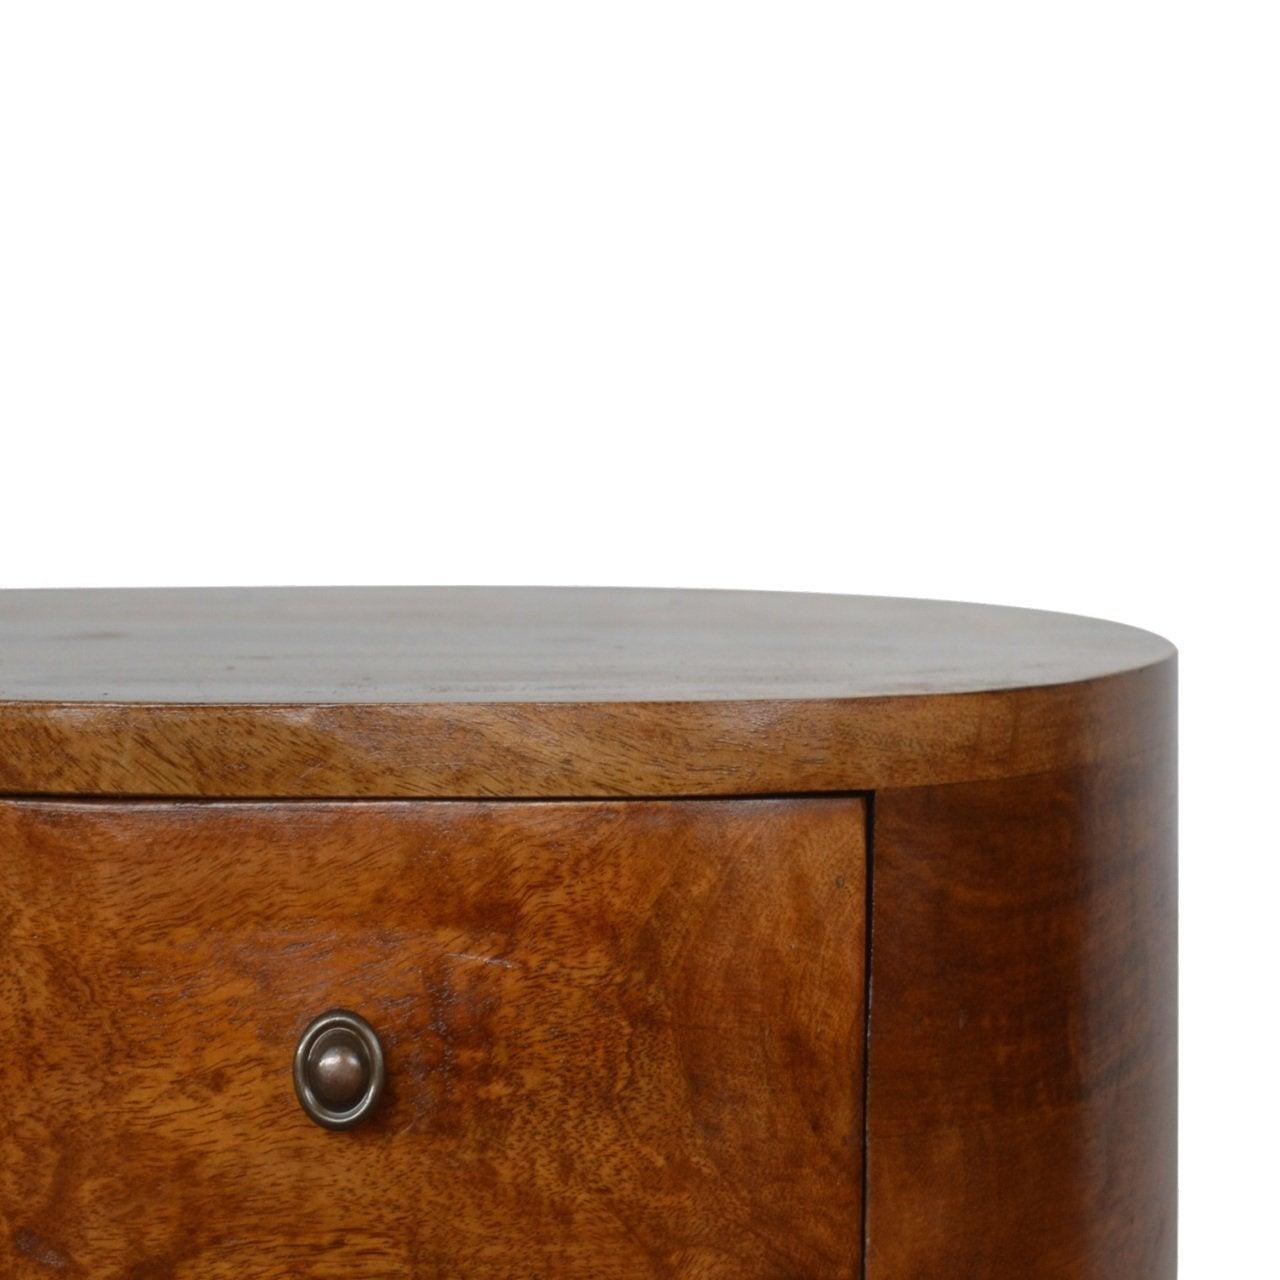 Chestnut rounded bedside table - crimblefest furniture - image 4